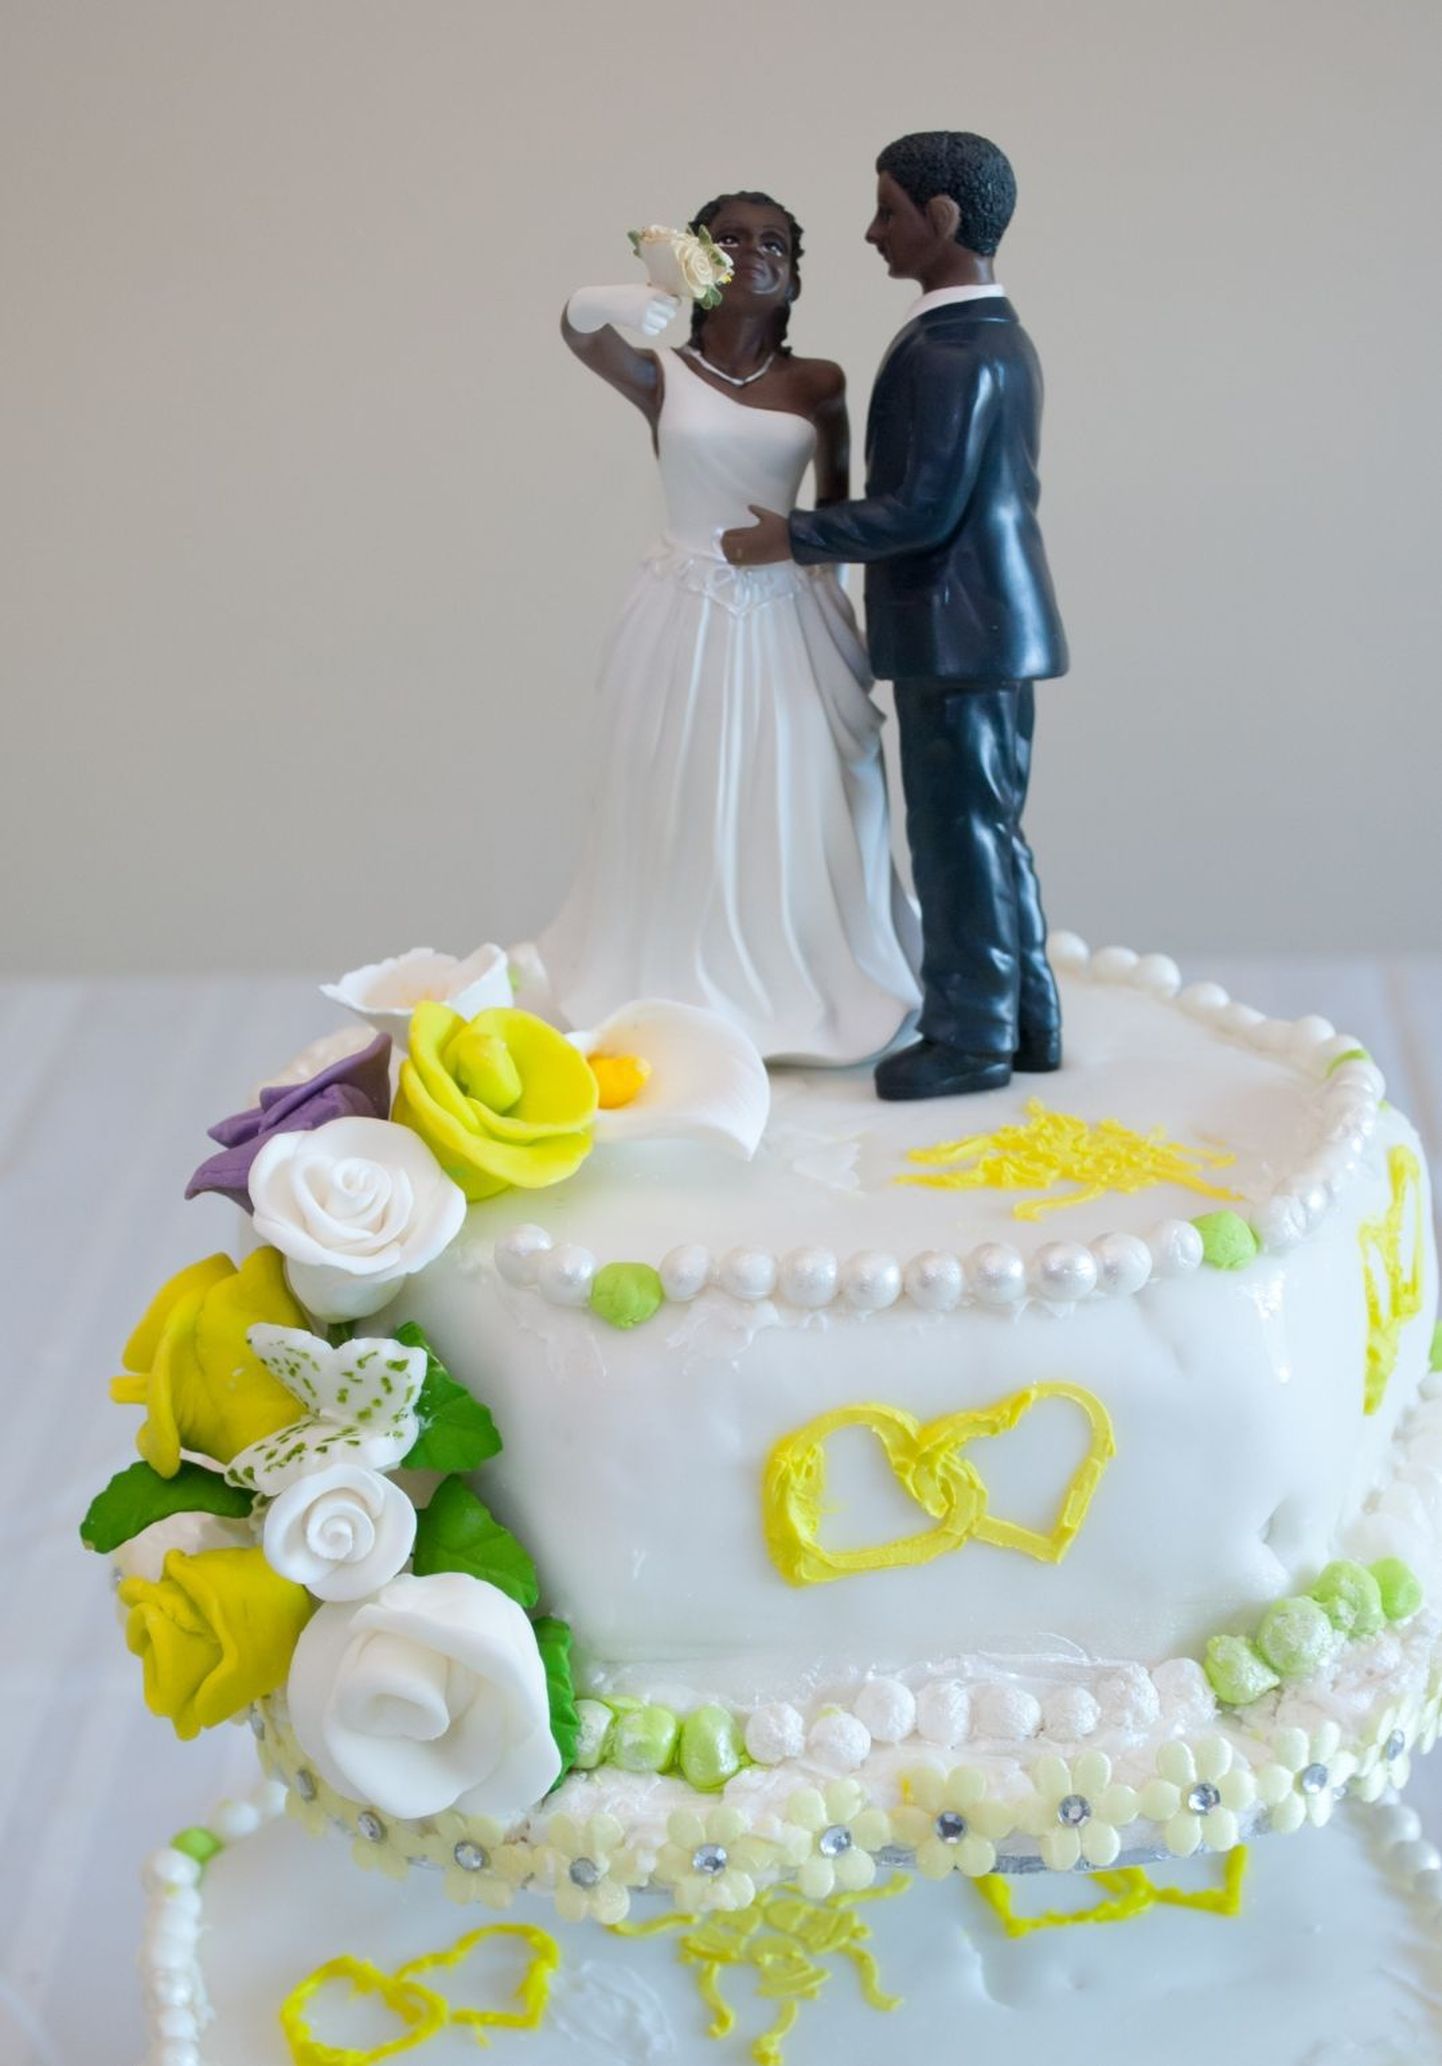 Lõuna-Aafrika Vabariigis abiellus kaheksa-aastane poiss 61-aastase naisega